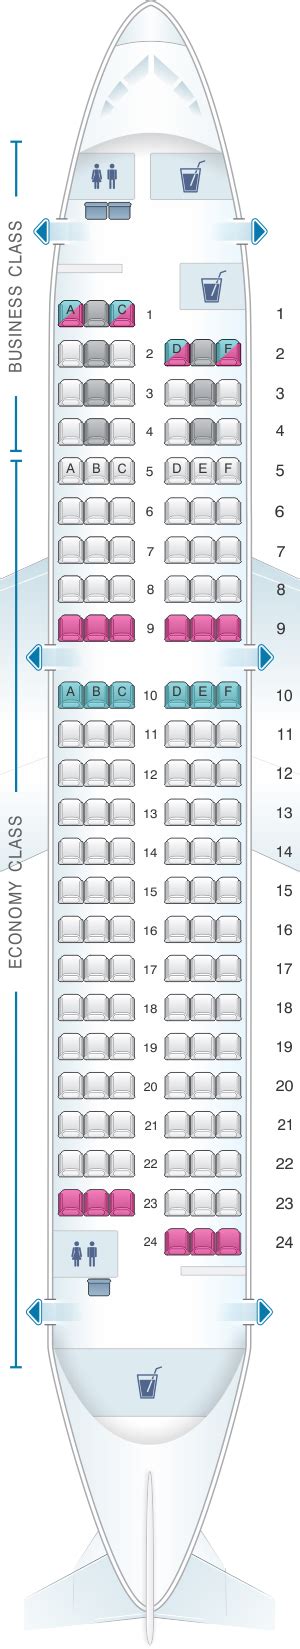 Airbus A319 Seating Chart Alexia Lorraine